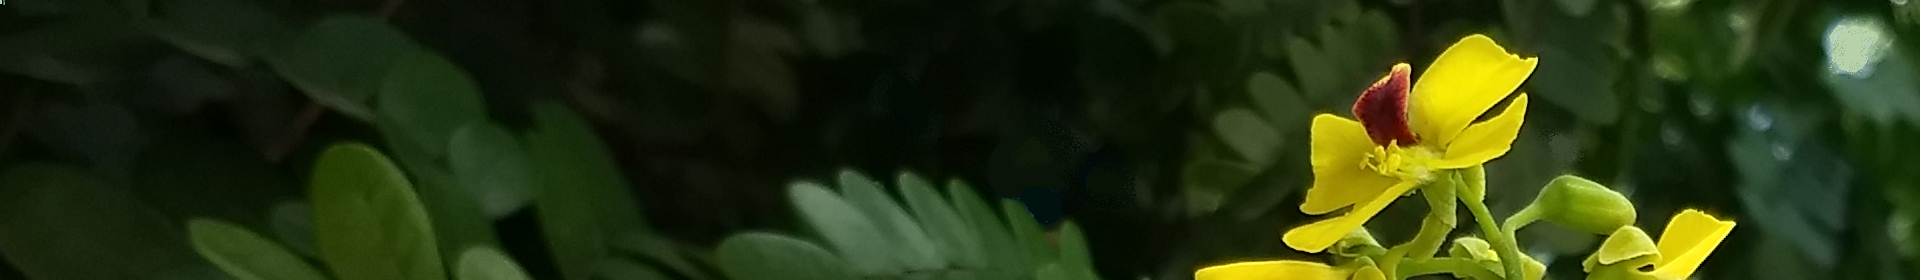 Cassia ferruginea